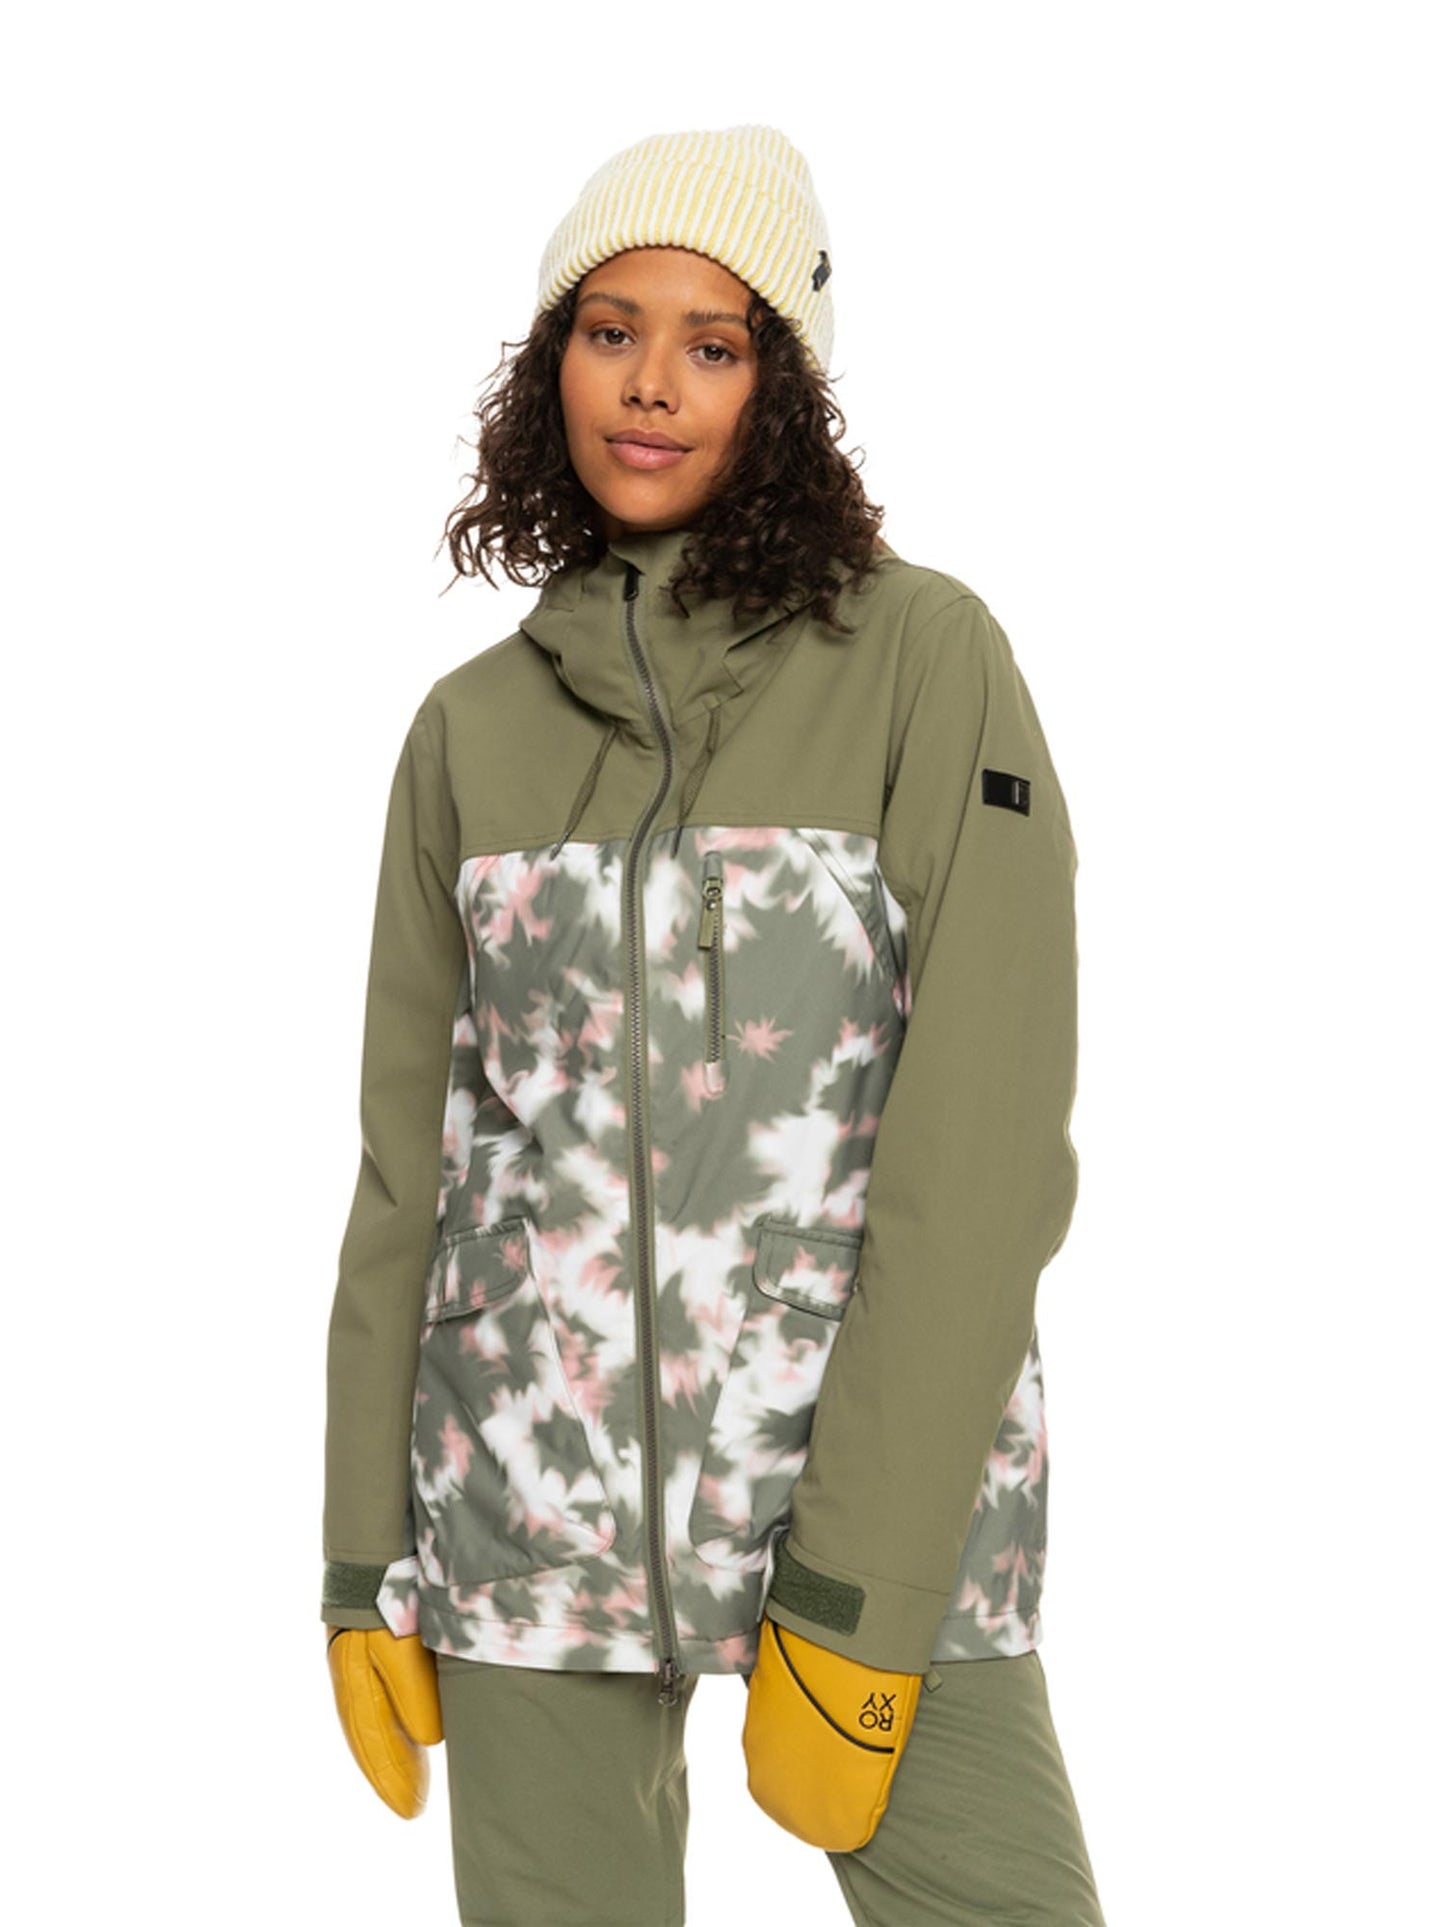 women's Roxy snowboard jacket, army green with tie dye pattern